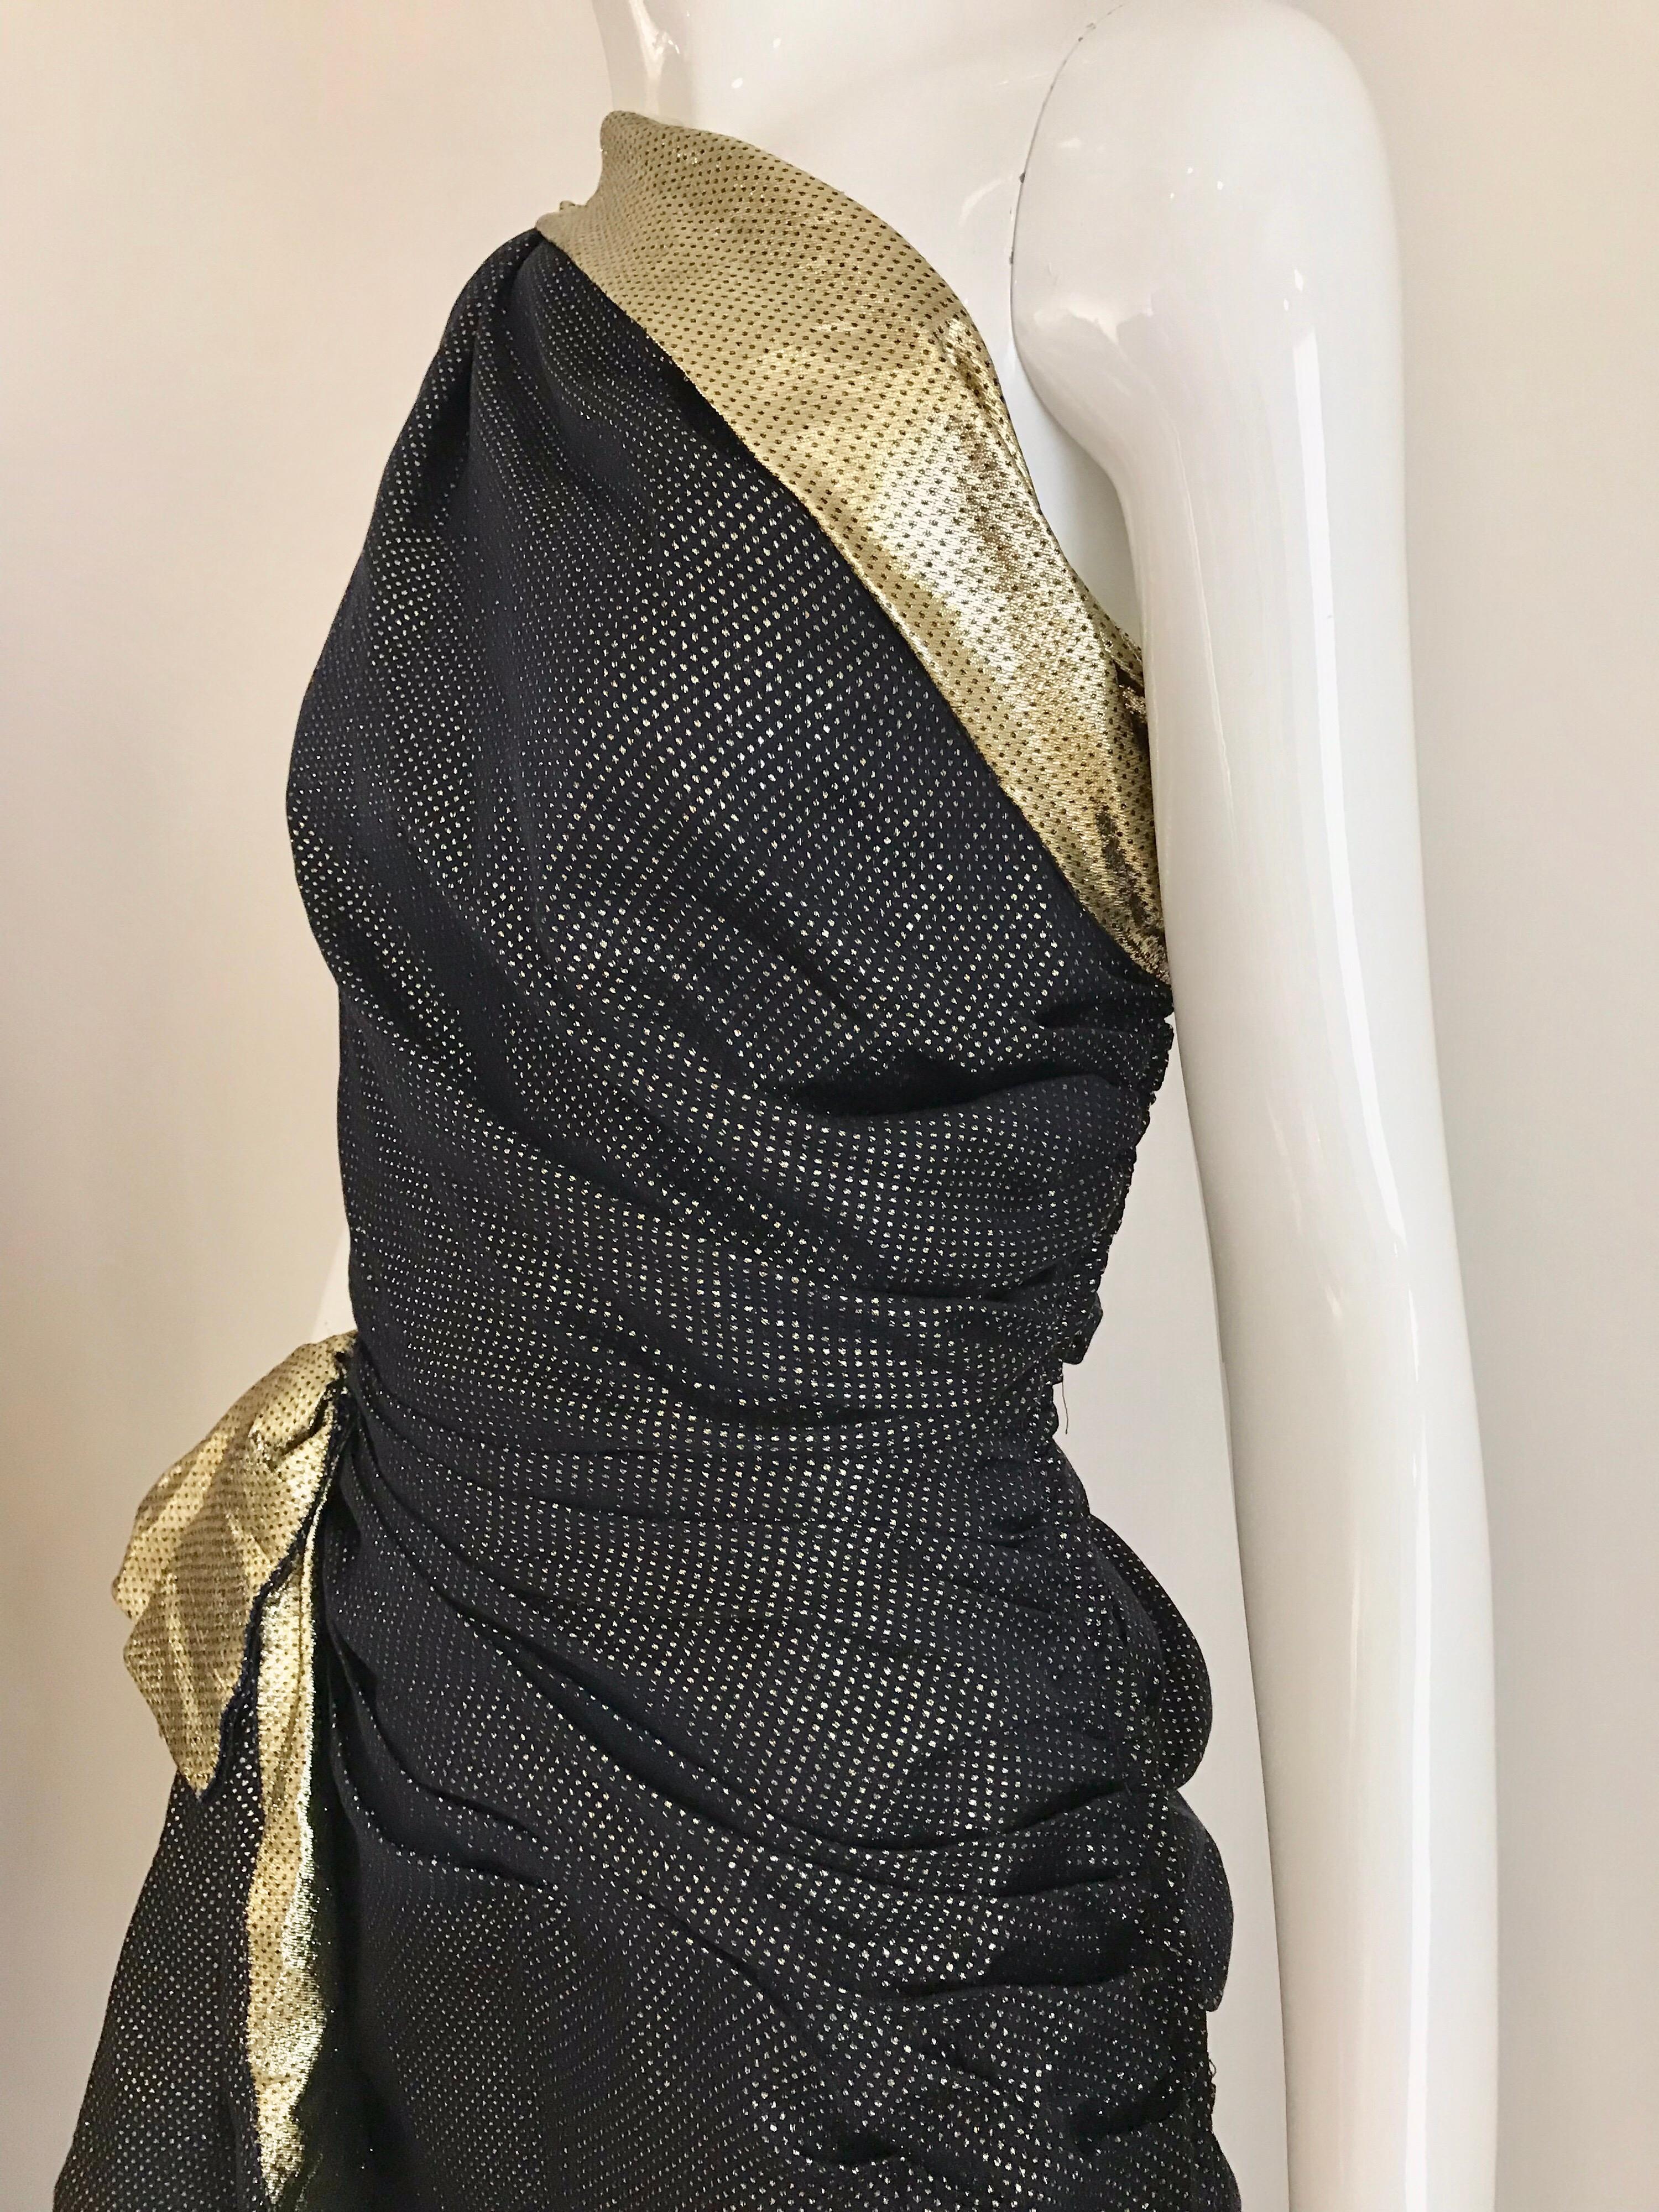 Elégante robe Vintage Vicky Tiel bleu marine et or en lamé de soie, une épaule. Fermeture éclair sur le côté avec fente latérale de 8